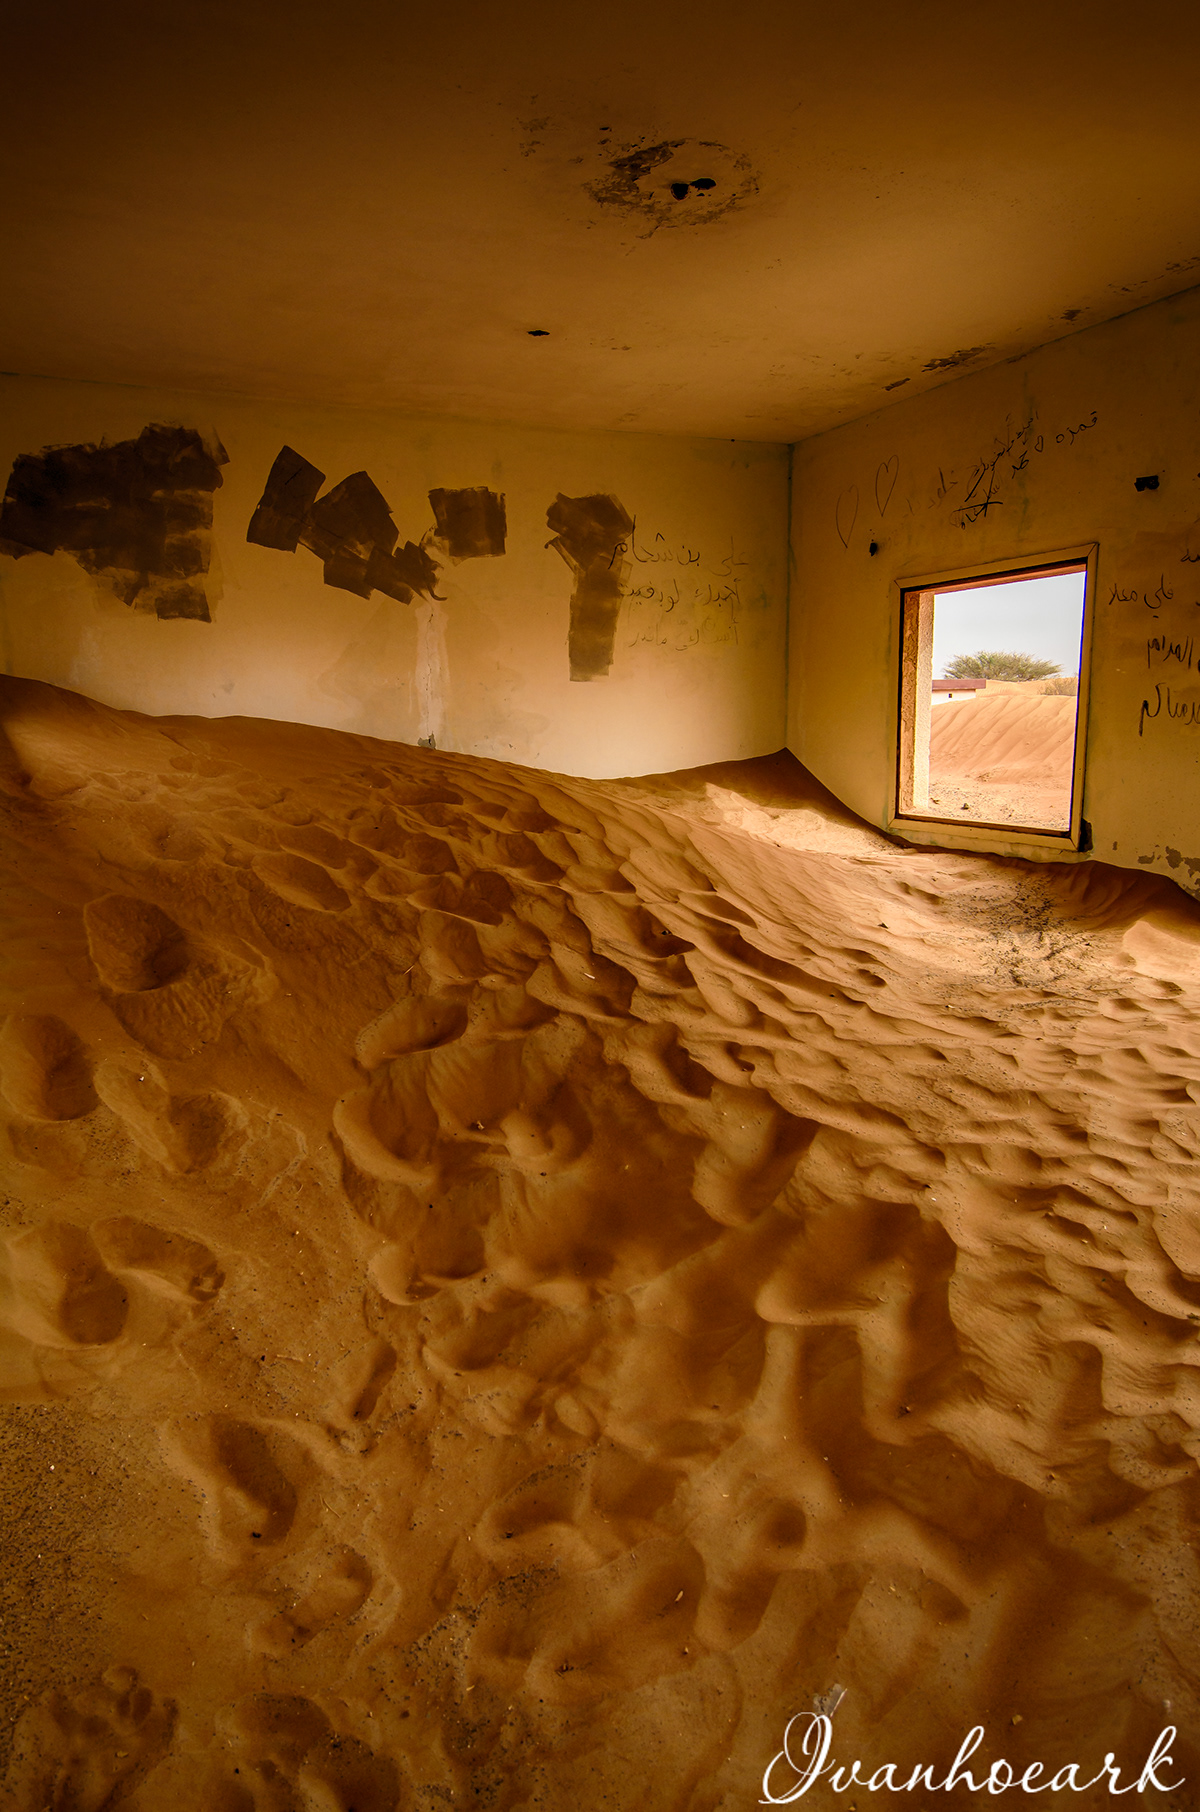 desert digital house landscapes Photography  village